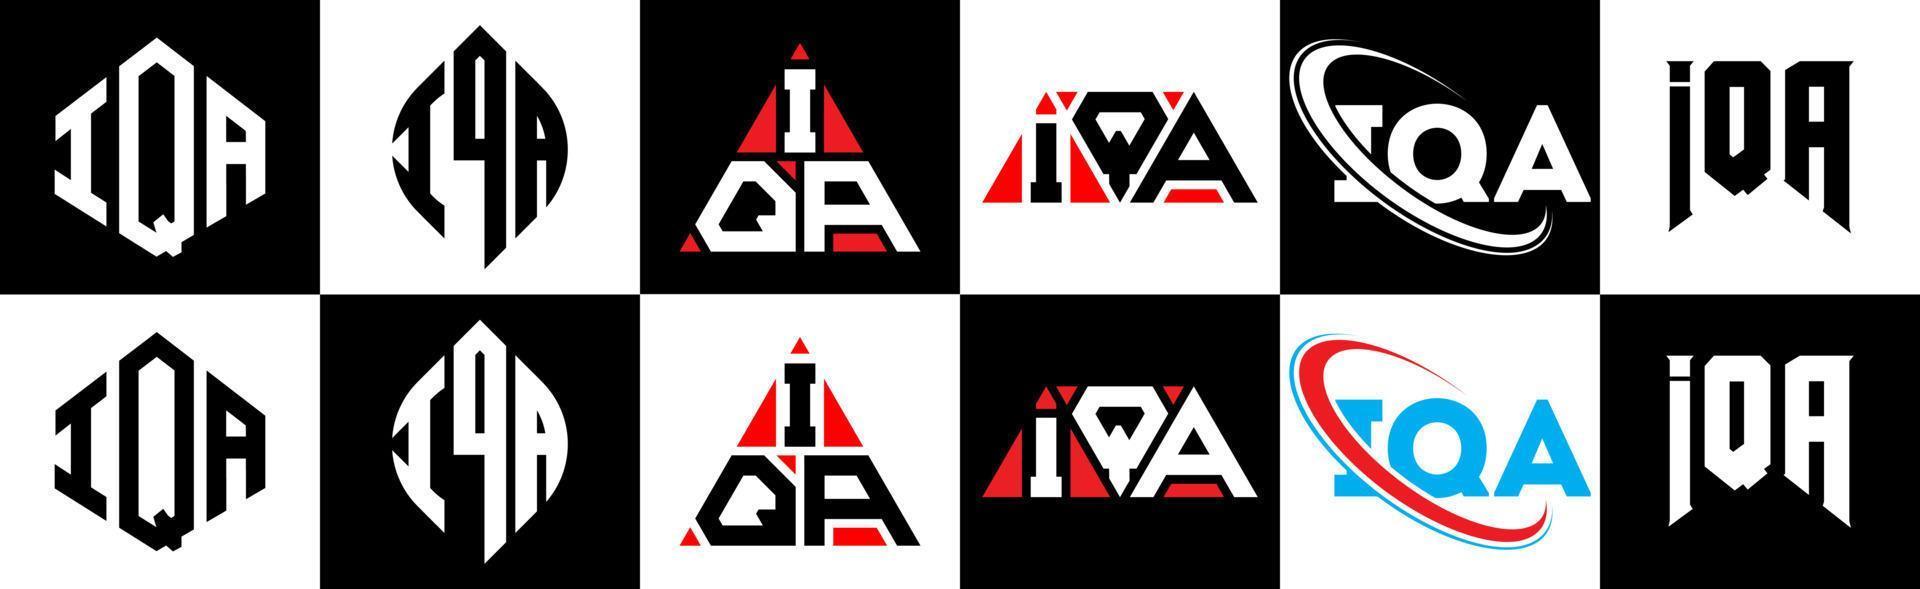 création de logo de lettre iqa en six styles. polygone iqa, cercle, triangle, hexagone, style plat et simple avec logo de lettre de variation de couleur noir et blanc dans un plan de travail. logo minimaliste et classique iqa vecteur